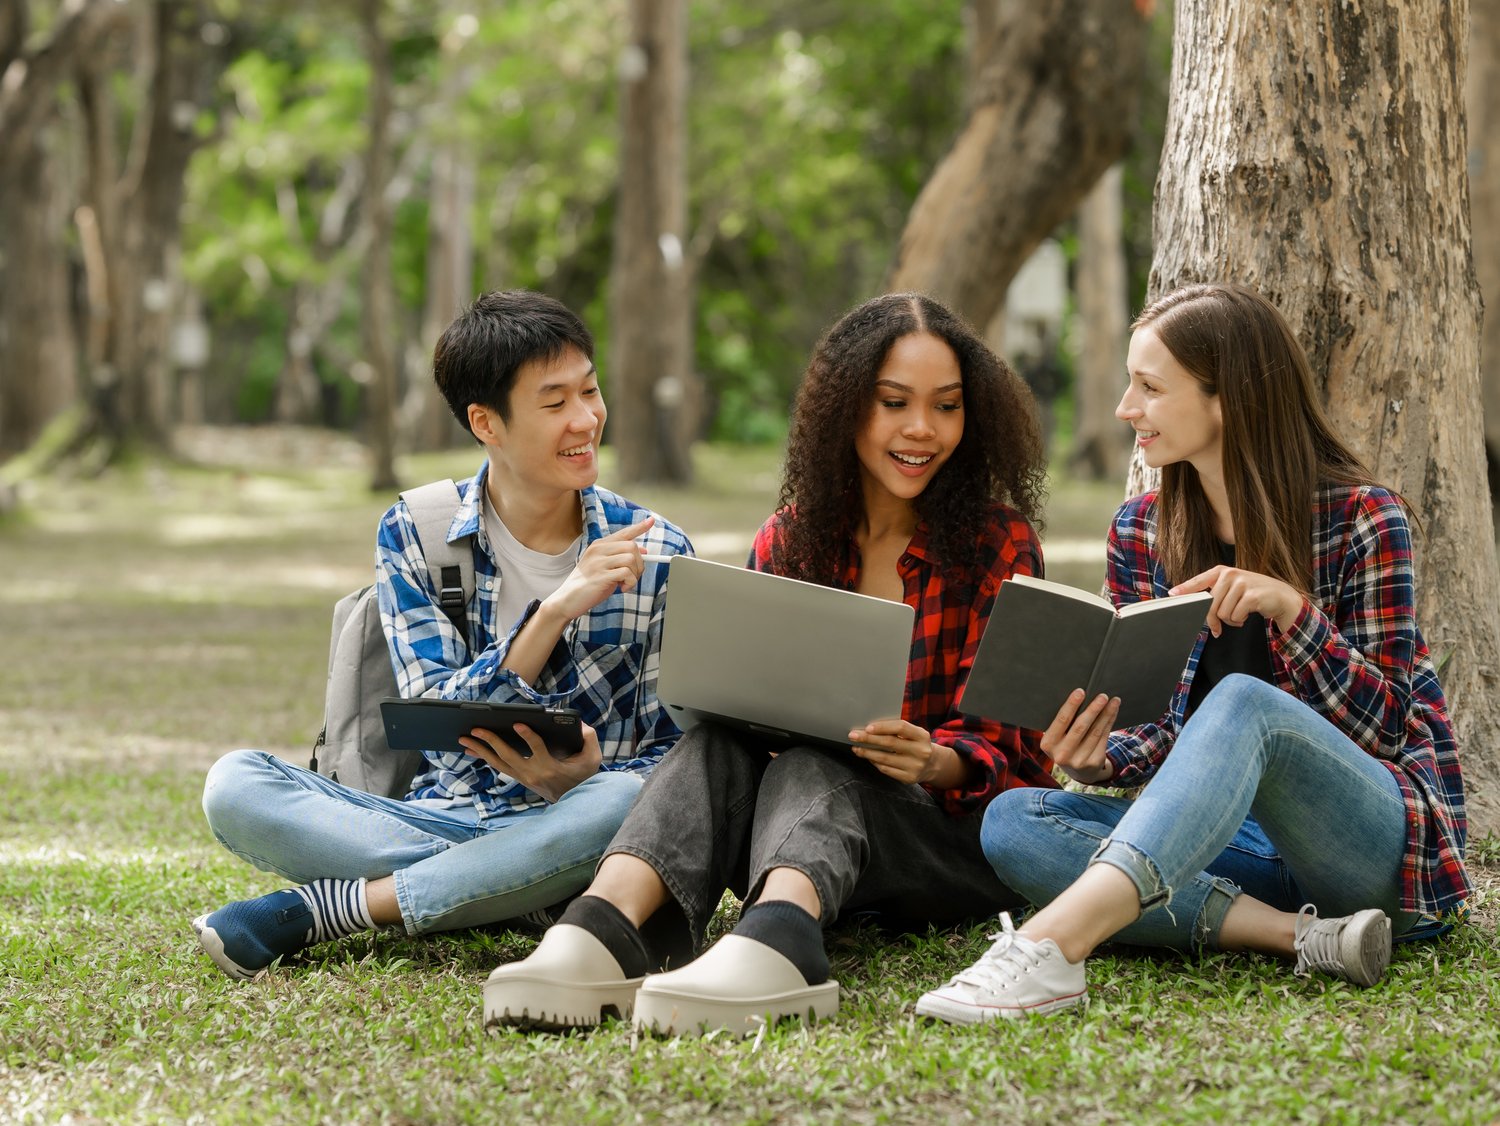 Internationale Studierende sitzen im Park und lernen zusammen.